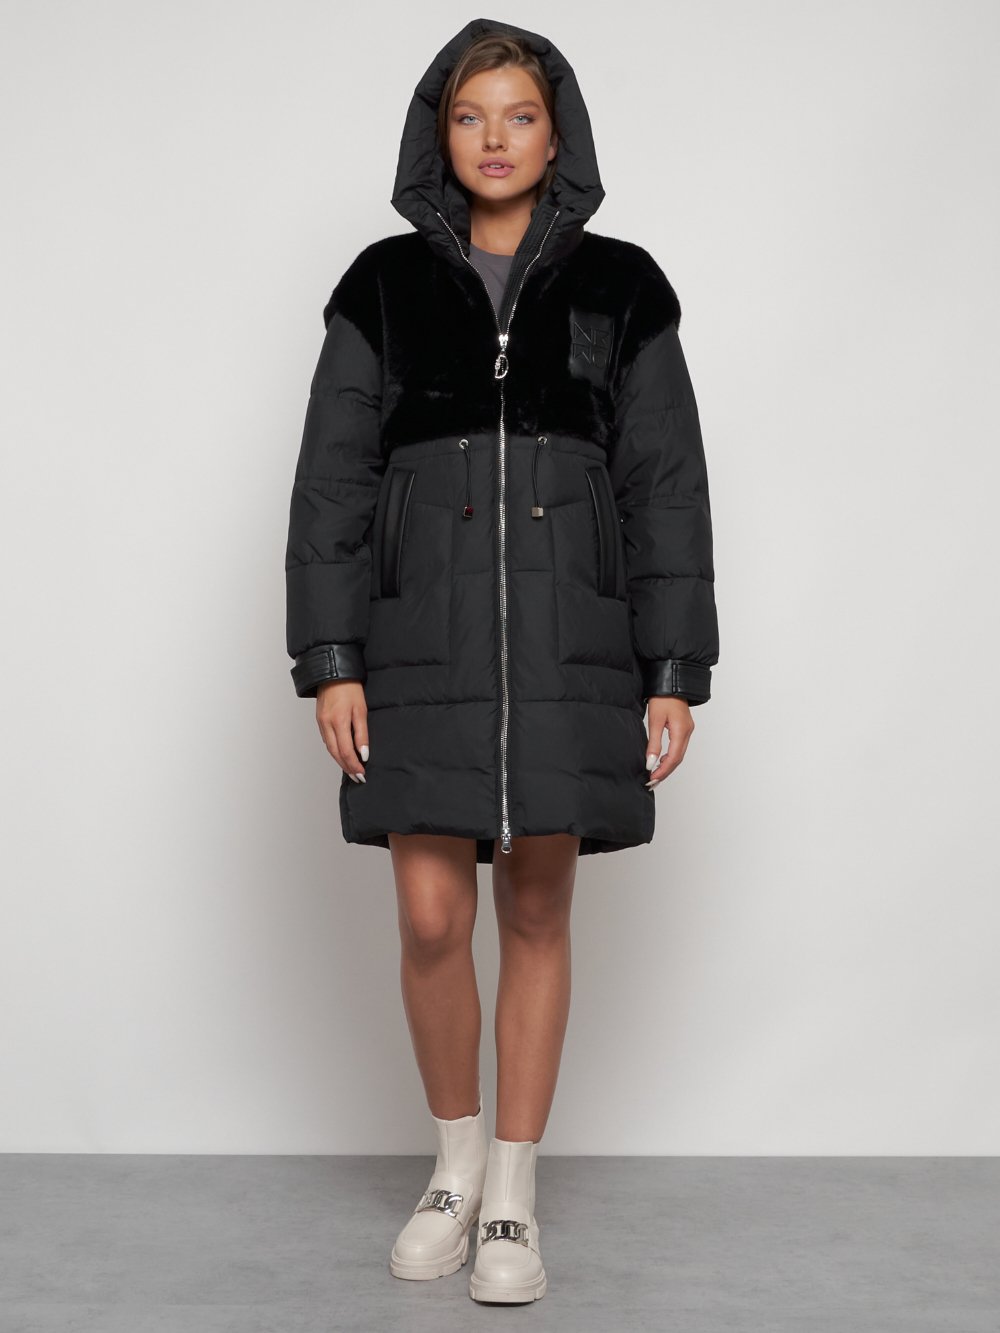 Купить куртку женскую зимнюю оптом от производителя недорого в Москве 133131Ch 1